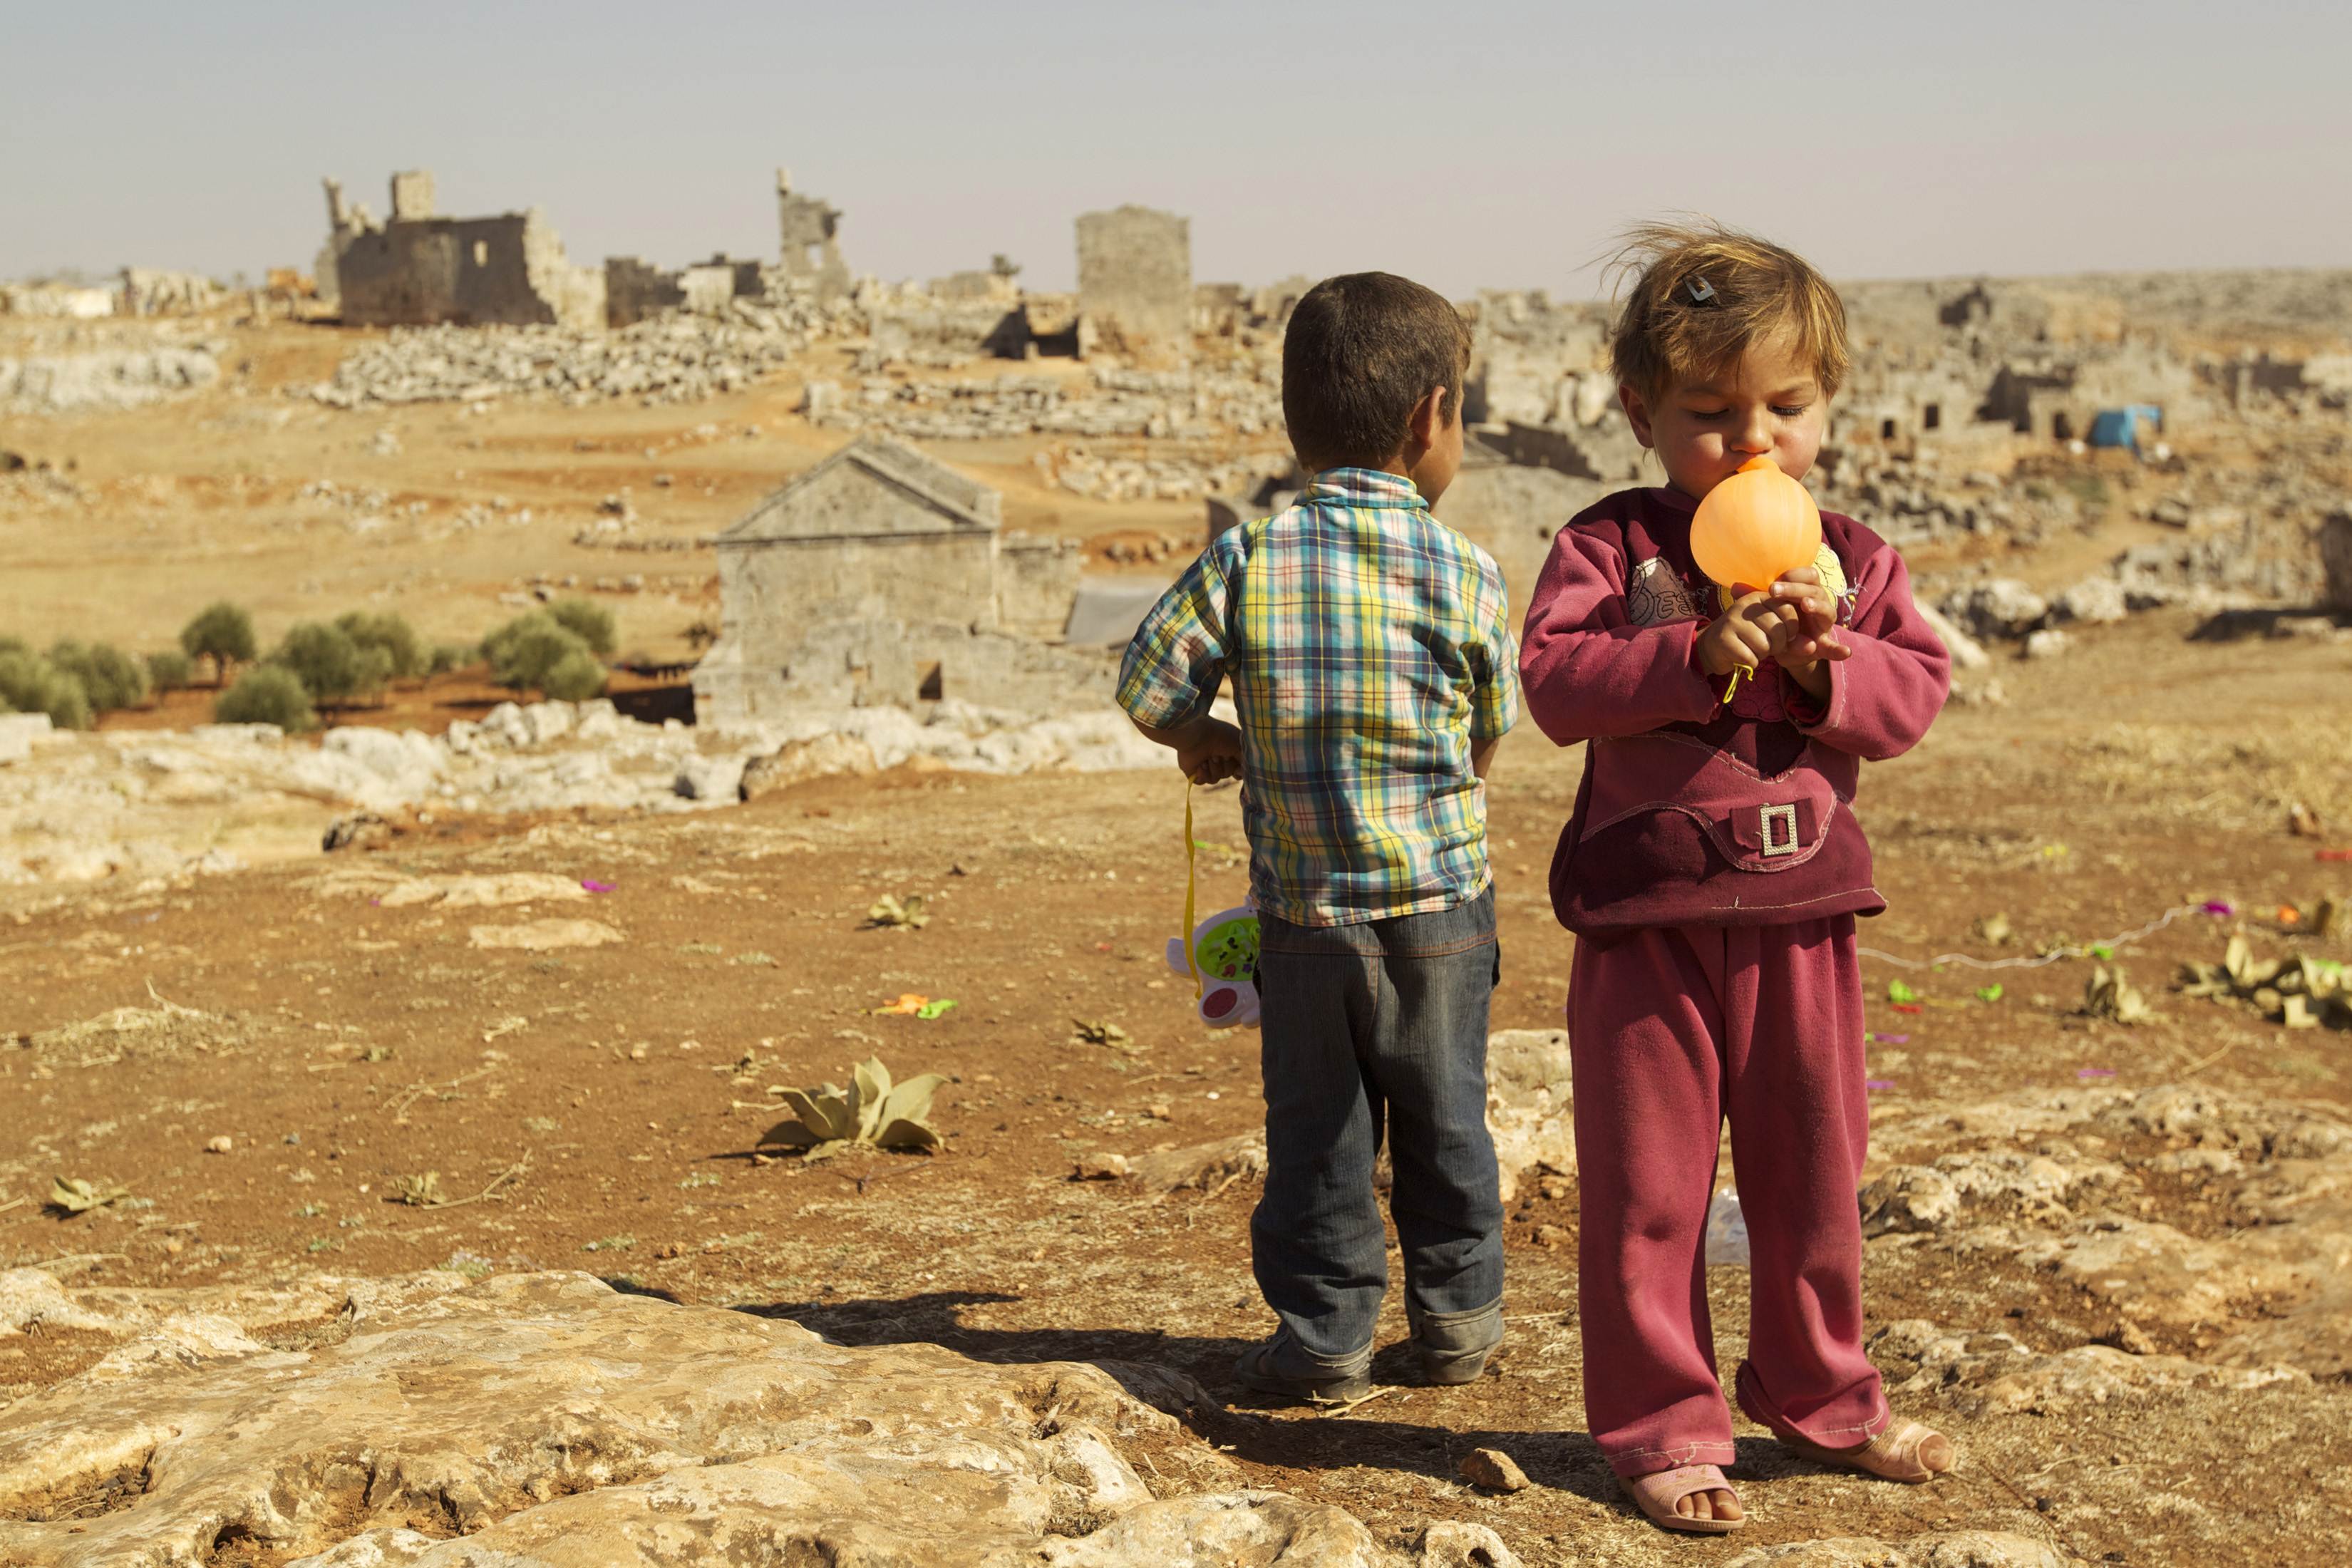 Ασφαλή πρόσβαση για να εμβολιαστούν παιδιά στη Συρία κατά της πολιομυελίτιδας, ζητά ο ΟΗΕ